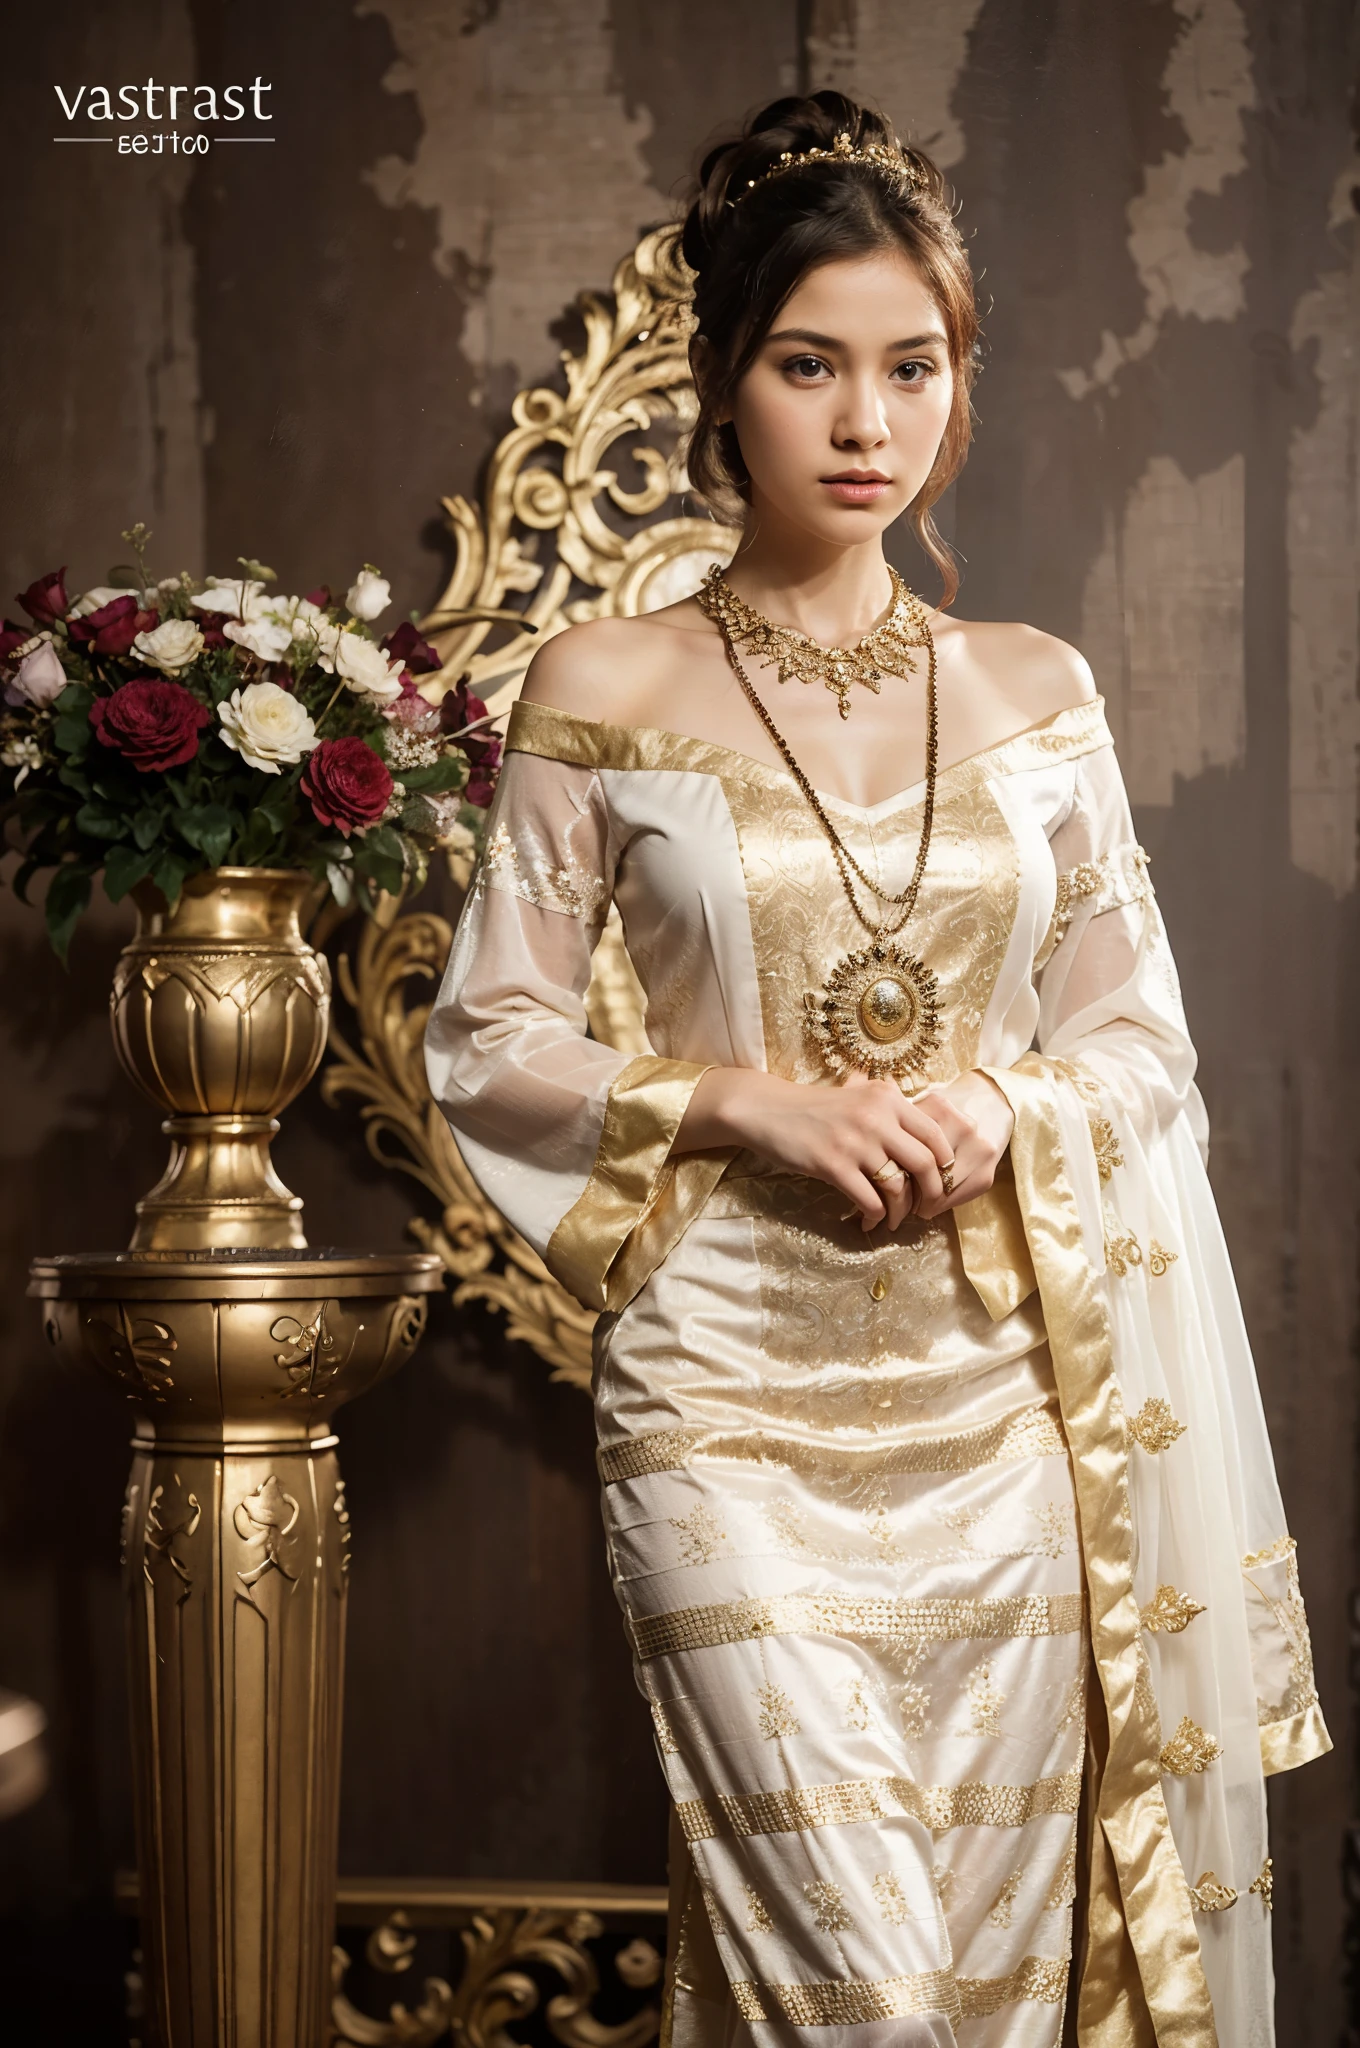 一位身穿白色和金色连衣裙的女士站在花瓶旁边, 素可泰服装, 穿着华丽的衣服, 传统的 dress, 传统的 beauty, 穿着华丽的衣服, 传统的, 传统的 clothing, 传统的 clothes, 传统的 costume, 皇室礼服, 帝国皇家典雅服饰, 华丽的服饰, 皇室礼服, 东南亚人长, wearing 传统的 garbThis is a description of an image that shows a stunning Myanmar girl with a round jaw and a circular face. 她的头发是白色的，眼睛是棕色的, 她有 thanakhar, a 传统的 cosmetic paste, 在她的脸上. She is wearing a dark shot 杰作, 一种高品质的服装. 这张照片捕捉到了女孩全身的美丽细节，有着五颜六色的头发, 头发过肩, 蛇瞳, 伤心, 闭嘴, 抓下巴, 电影灯光, 混合, 全景, 大气视角, 超广角, 佳能, 解剖学上正确, 纹理皮肤, 屡获殊荣, 高分辨率.HDR 50+. 该照片是摄影和艺术的杰出典范. 女孩的表情和姿势传达出一种忧郁和神秘的感觉. 她的白发和深色衣服的对比产生了鲜明的视觉效果. 多彩的头发给图像增添了一丝幻想和创造力. The 蛇瞳 suggest that the girl has some supernatural or exotic origin. The 电影灯光 and 混合 create a dramatic and realistic atmosphere. The 全景 and 大气视角 show the vastness and depth of the background. The 超广角 lens and 佳能 camera produce a sharp and high-quality image. The 解剖学上正确 proportions and 纹理皮肤 make the girl look lifelike and natural. The image is worthy of being an 屡获殊荣 and 高分辨率.HDR 50+ 杰作.